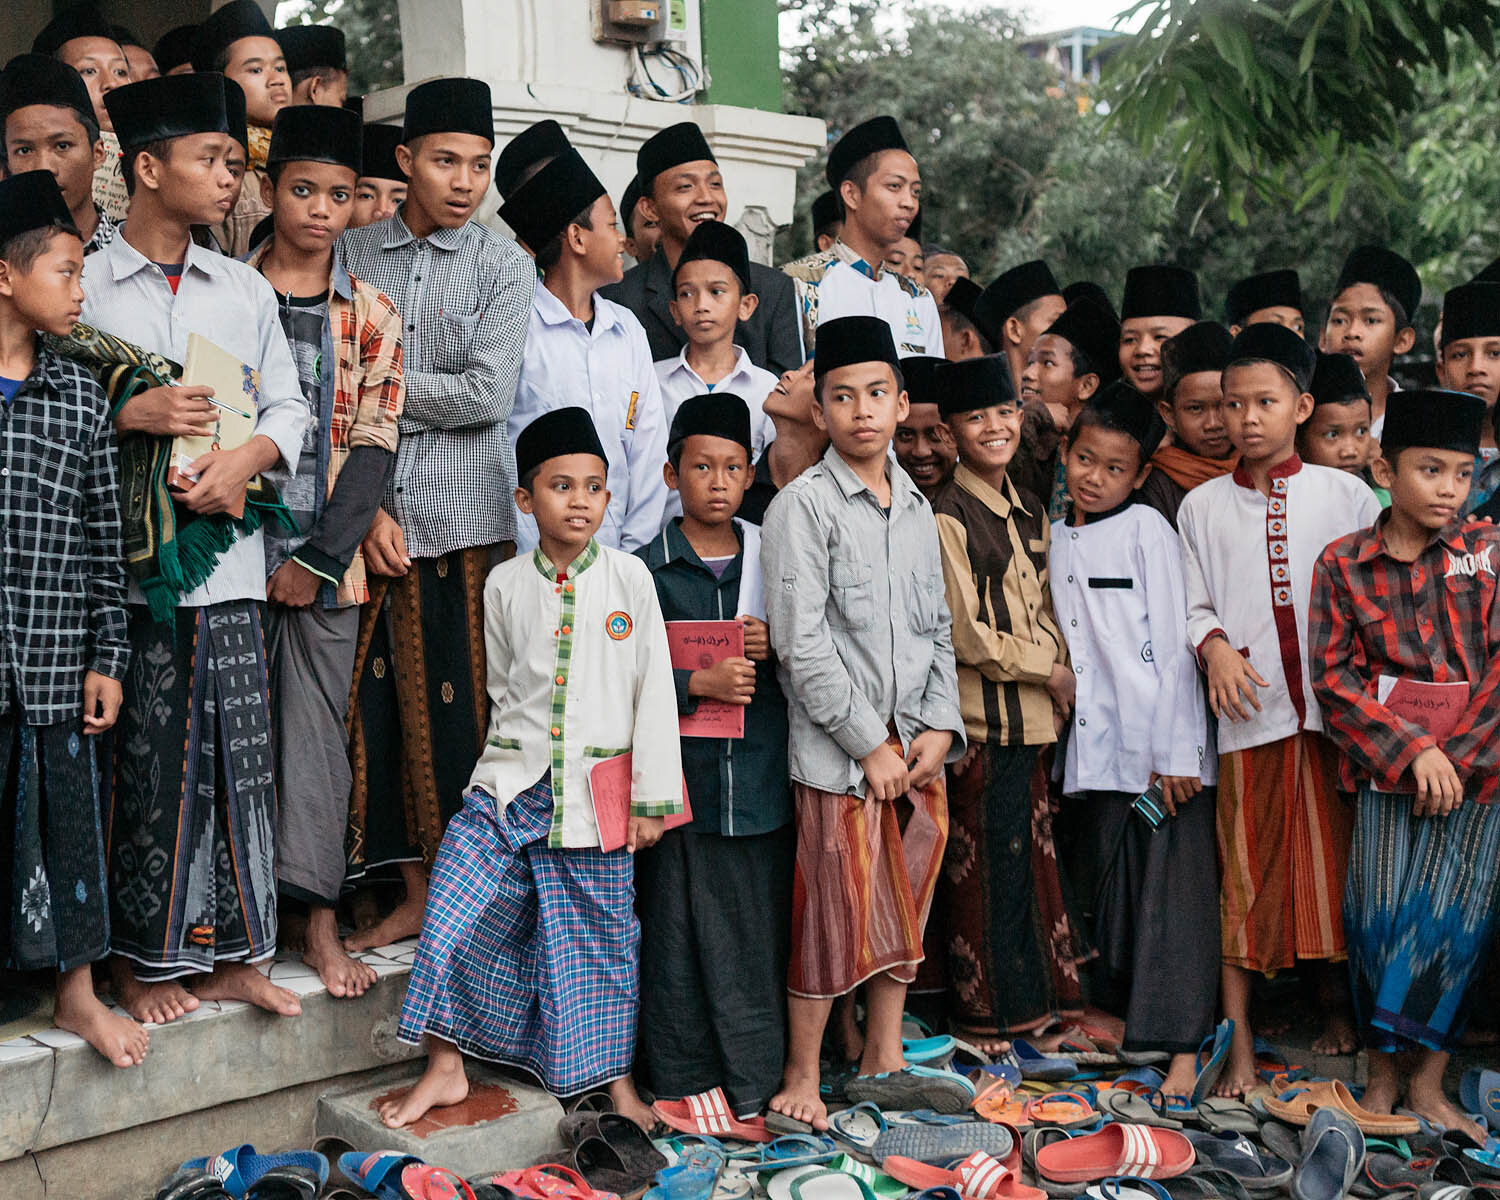 ISLAM_INDONESIA_PESANTREN_0007.jpg